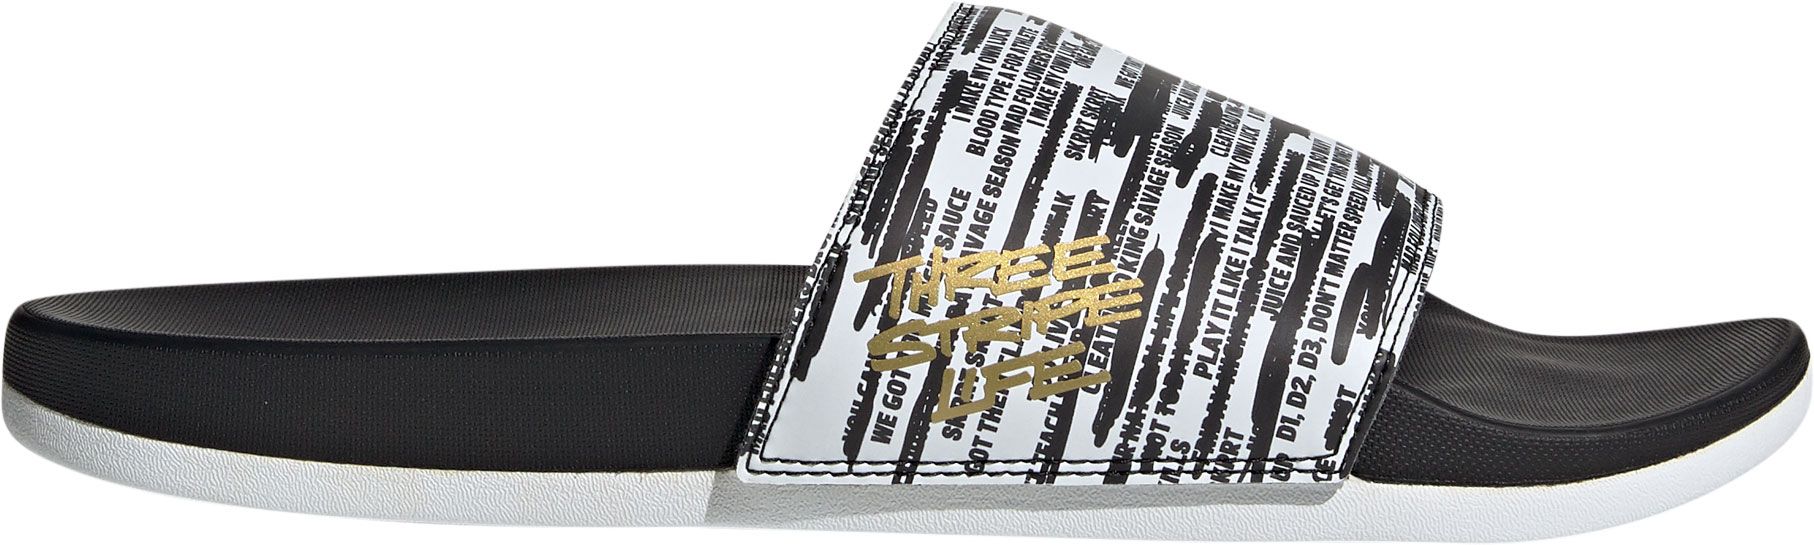 adidas men's adilette three stripe life comfort slides